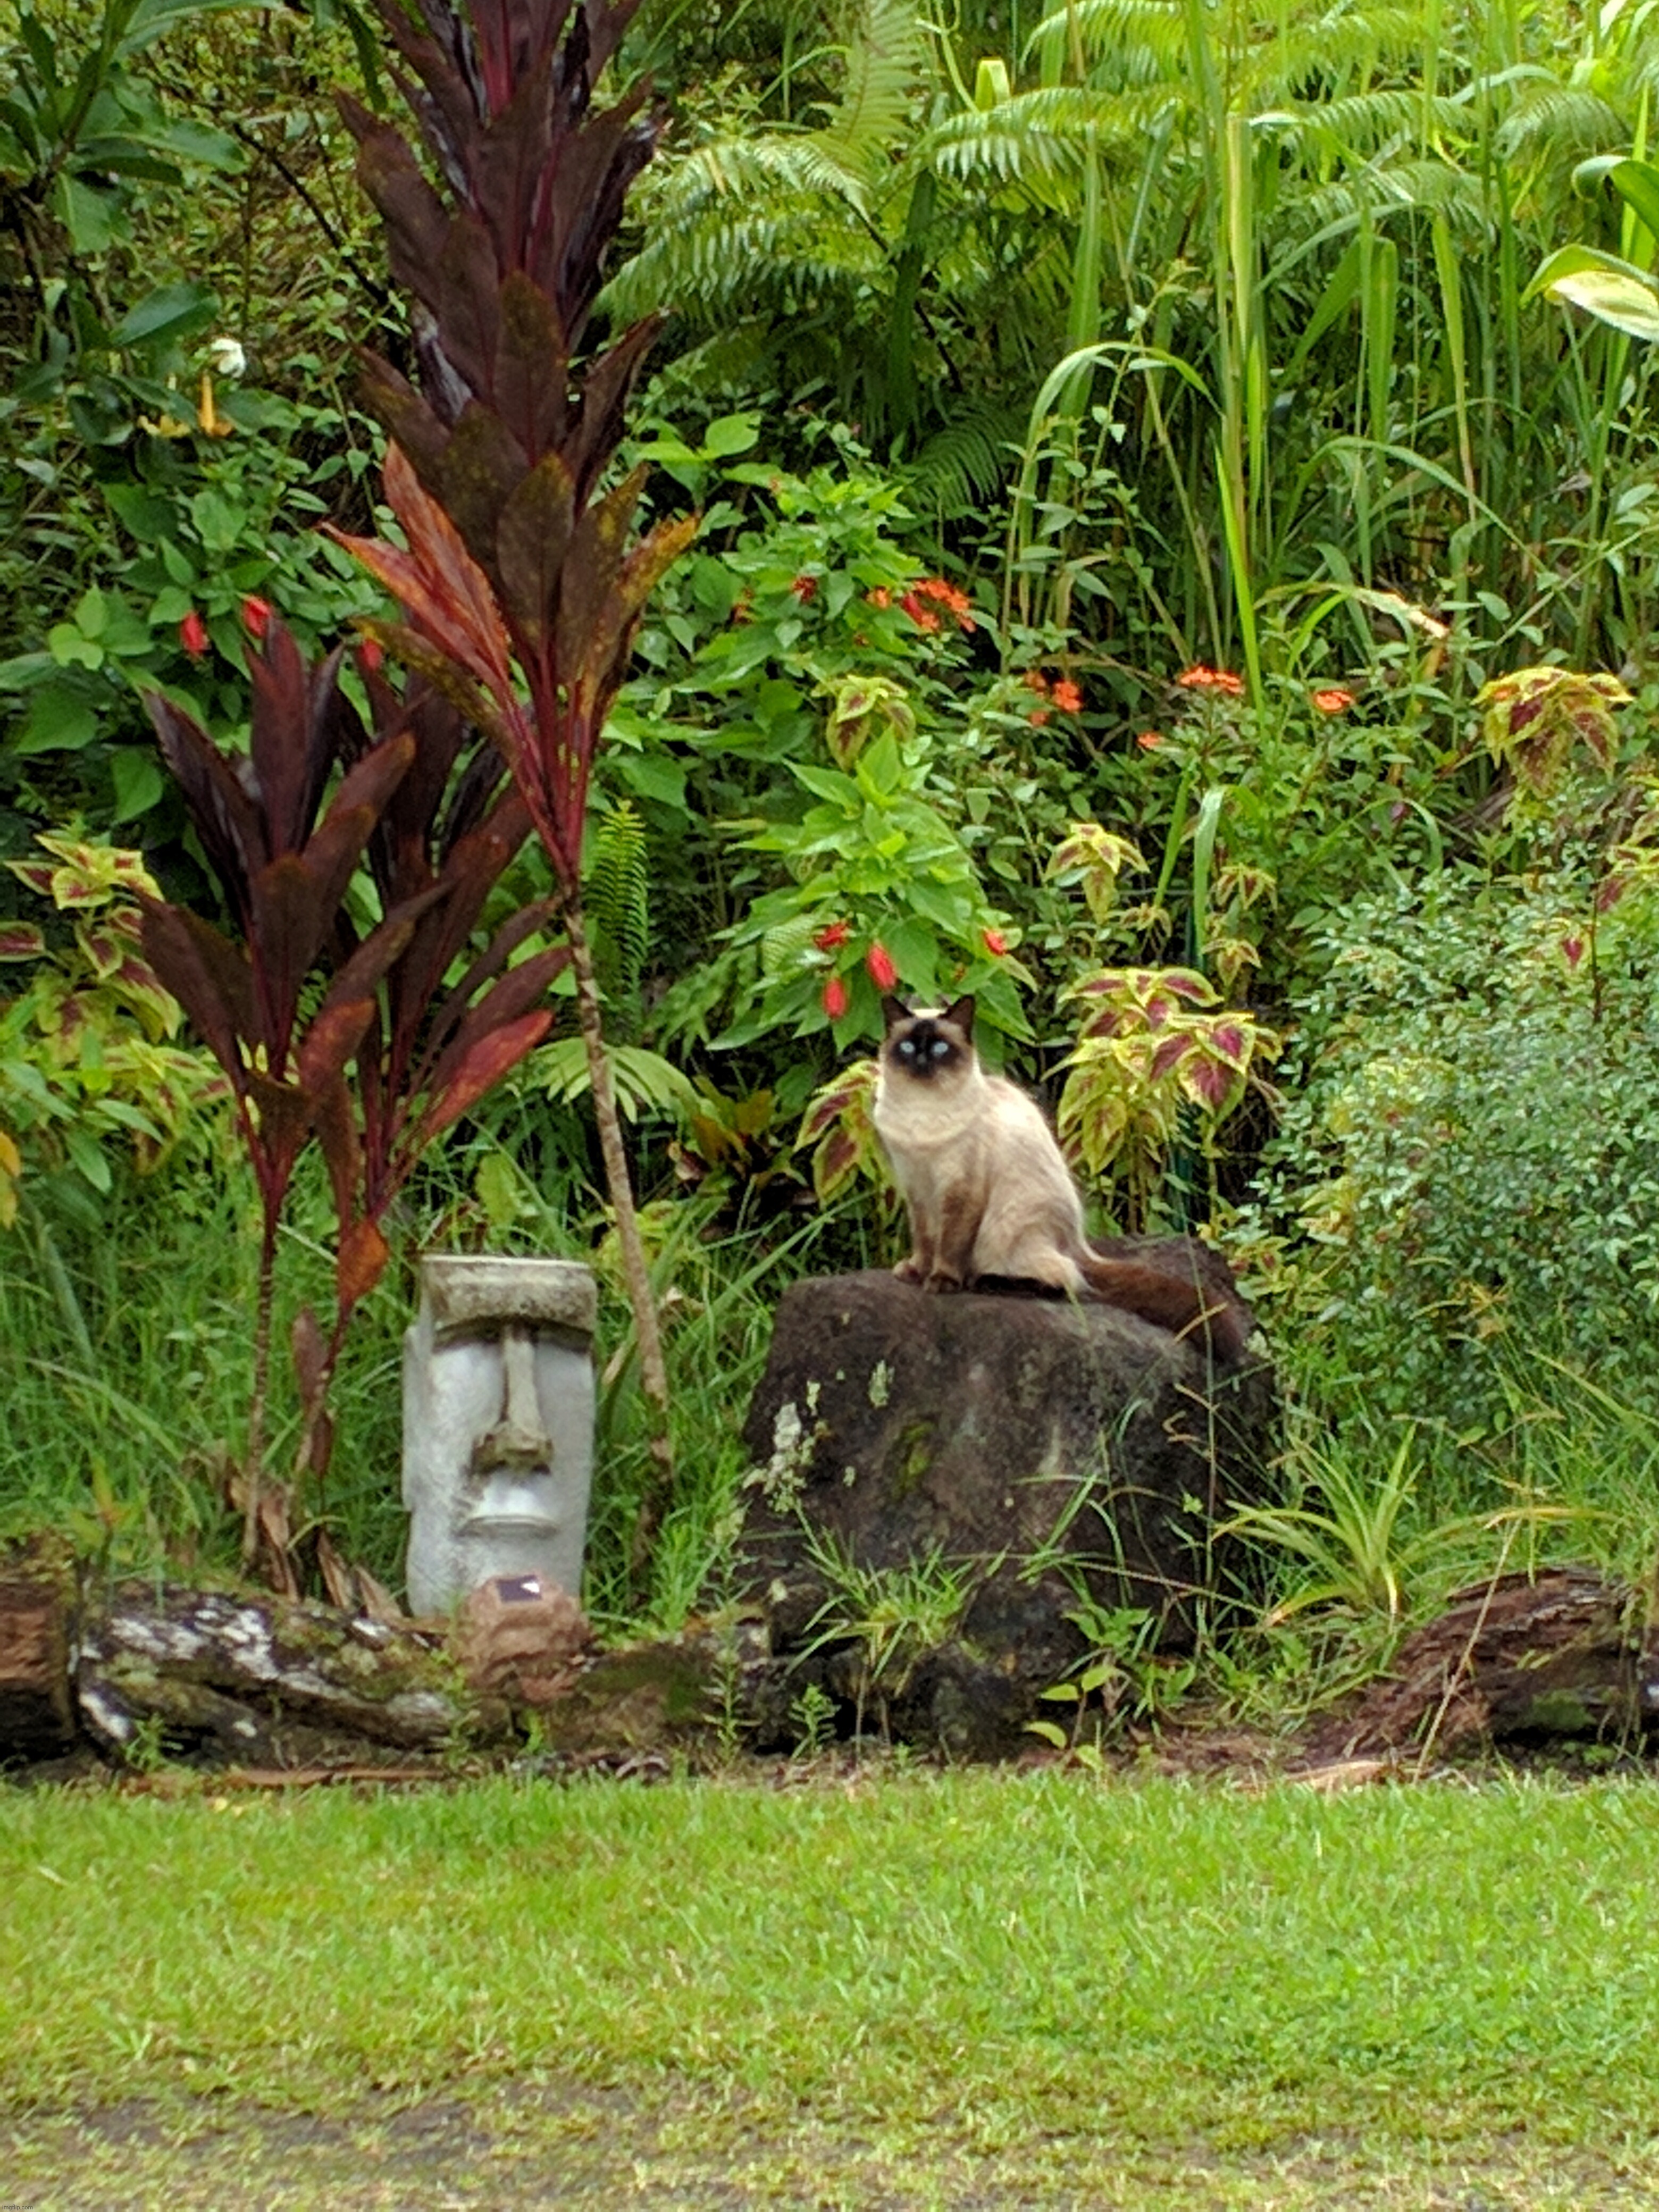 Hawaiian kitty from Pahoa | image tagged in hawaii,kitty,moai,pahoa,subjectmatters | made w/ Imgflip meme maker